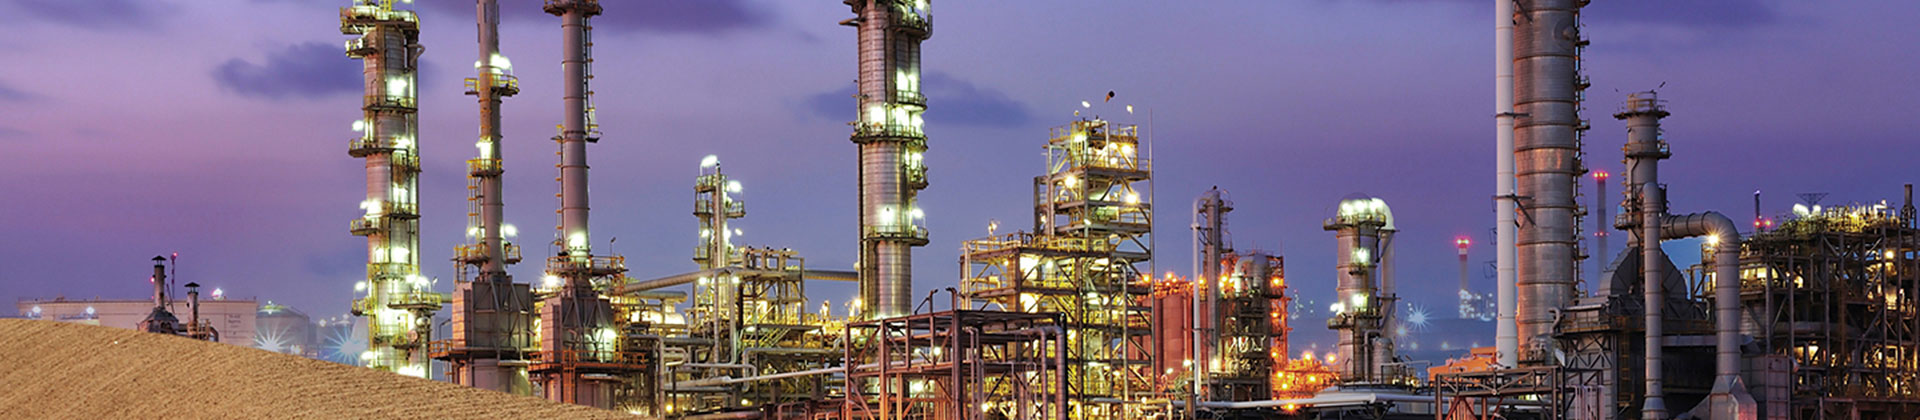 Petrochemical applications – Danfoss